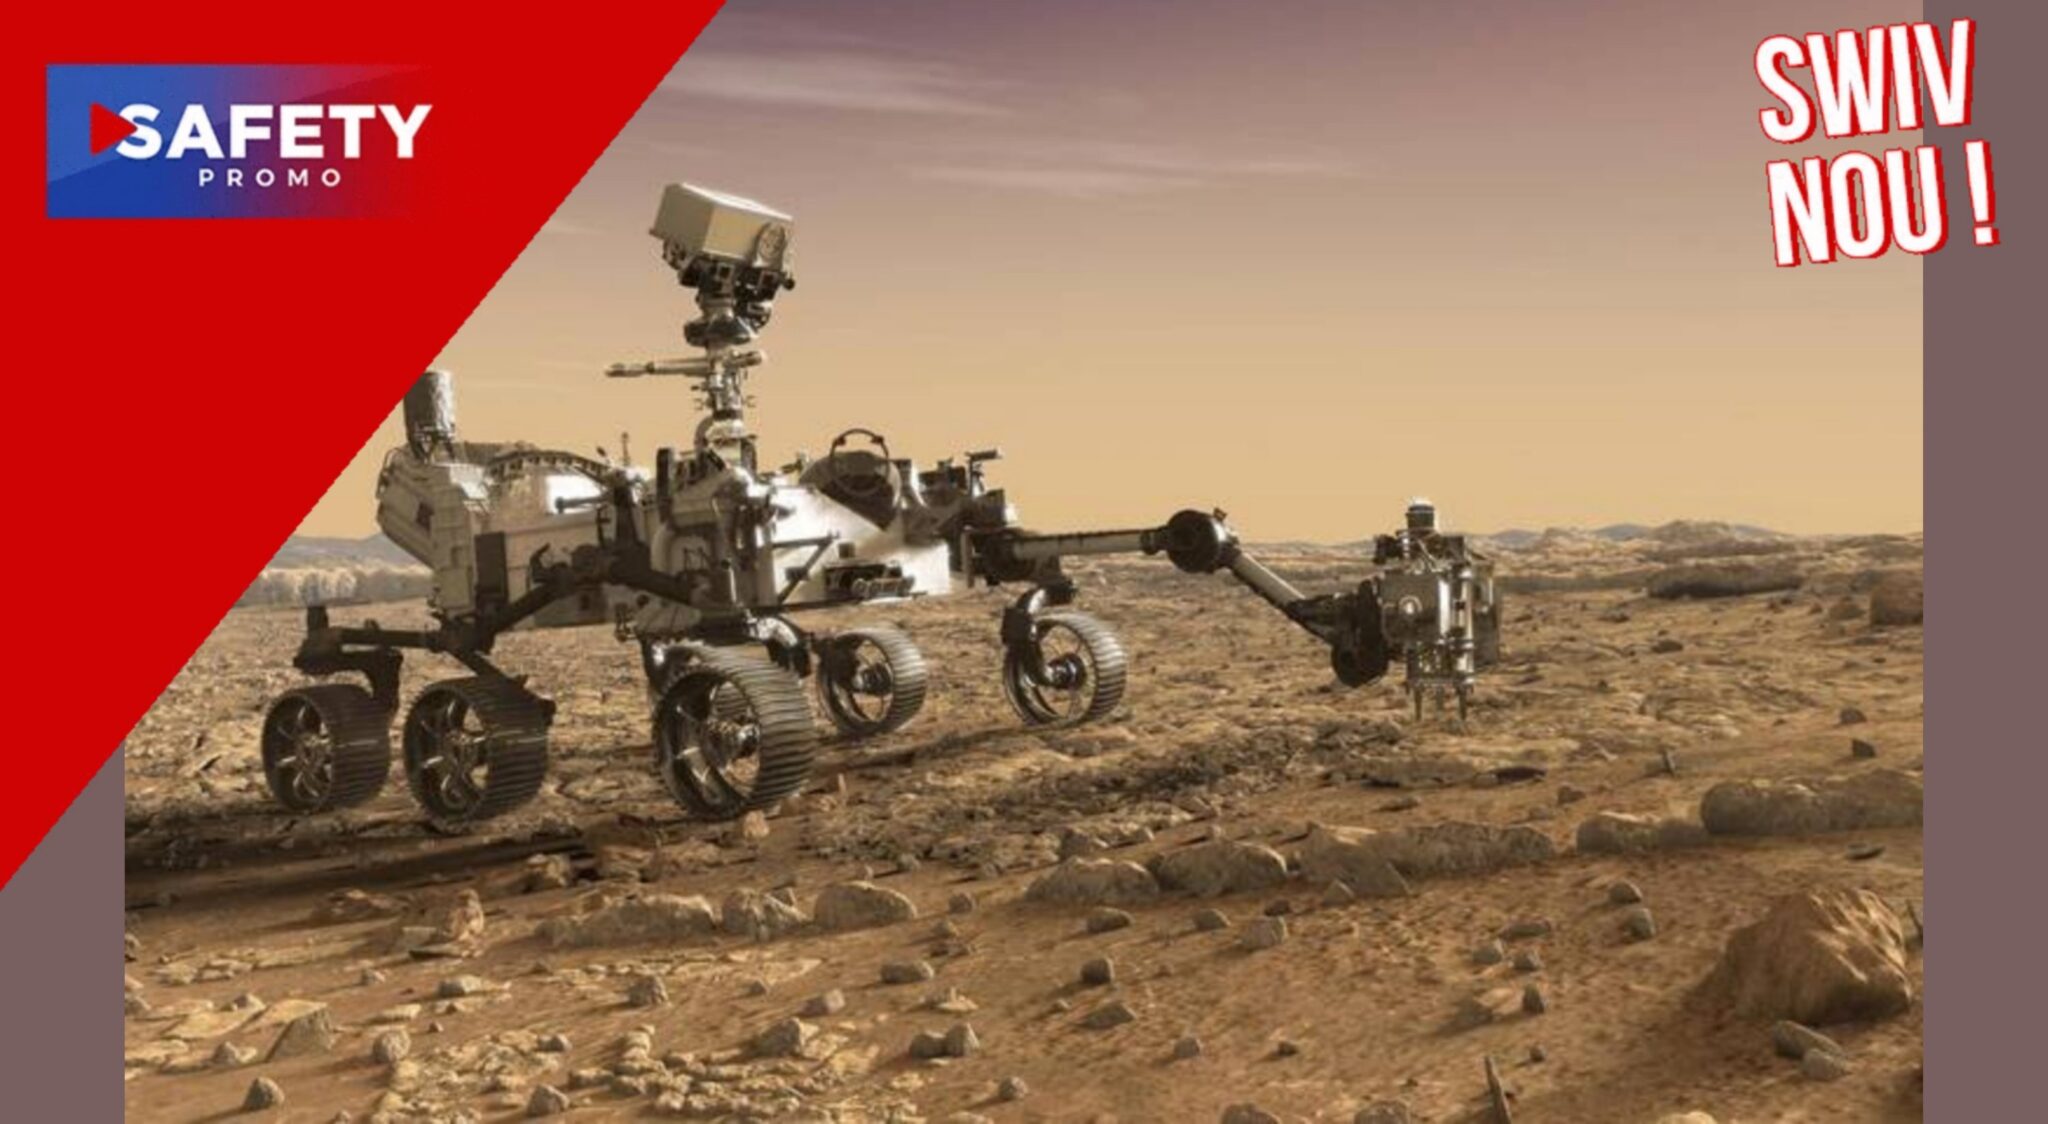 Le rover Perseverance confirme qu’il y a eu un immense lac sur Mars